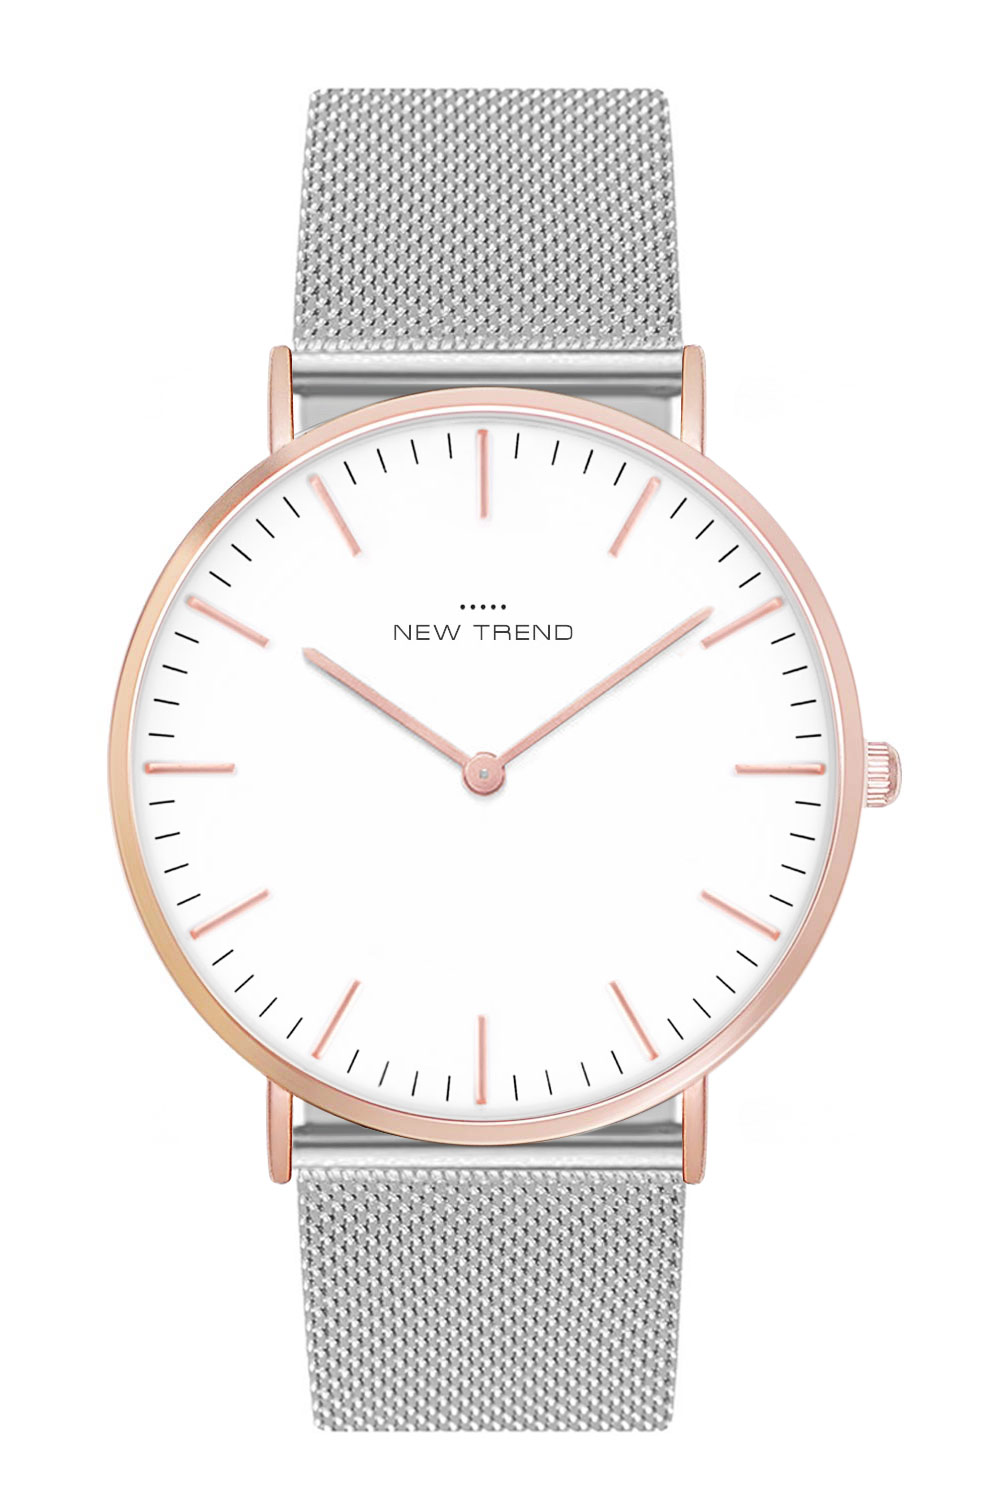 New Trend Unisex Armbanduhr Damen-Uhr Herren-Uhr, Analog Display, Quarzwerk, Metall-Armband, klassische schlichte Zeigeruhr mit Dornschließe